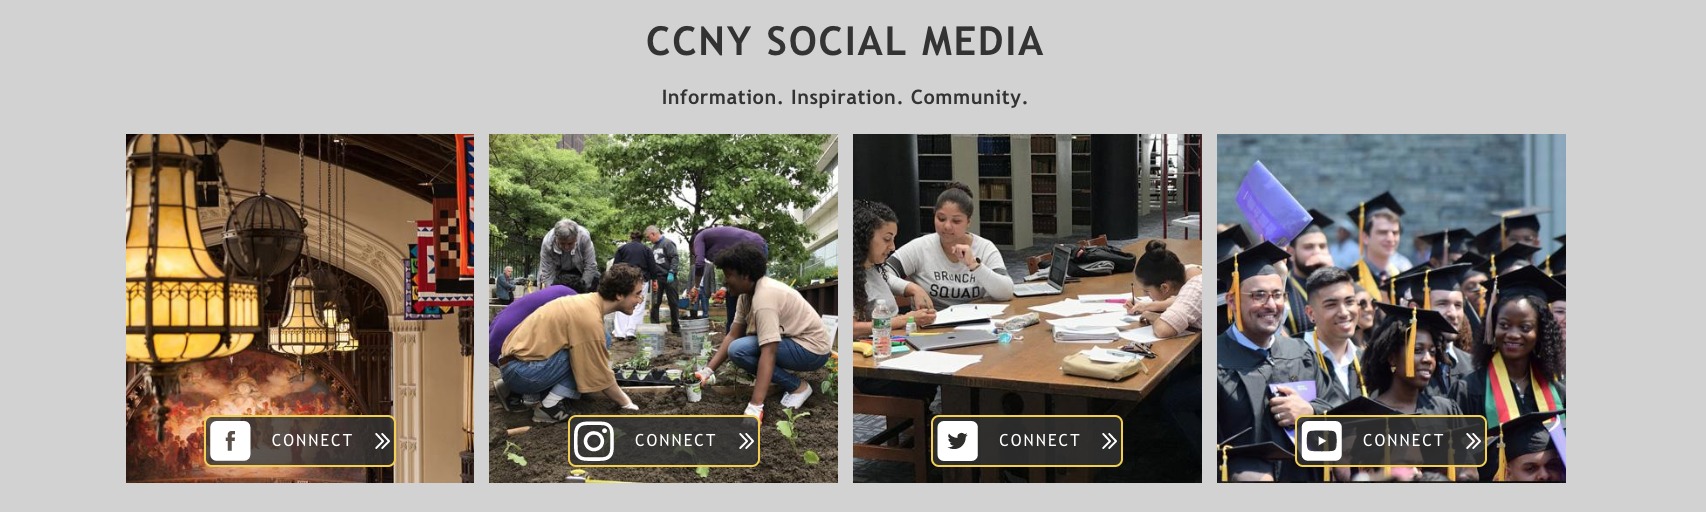 CCNY Social Media Example